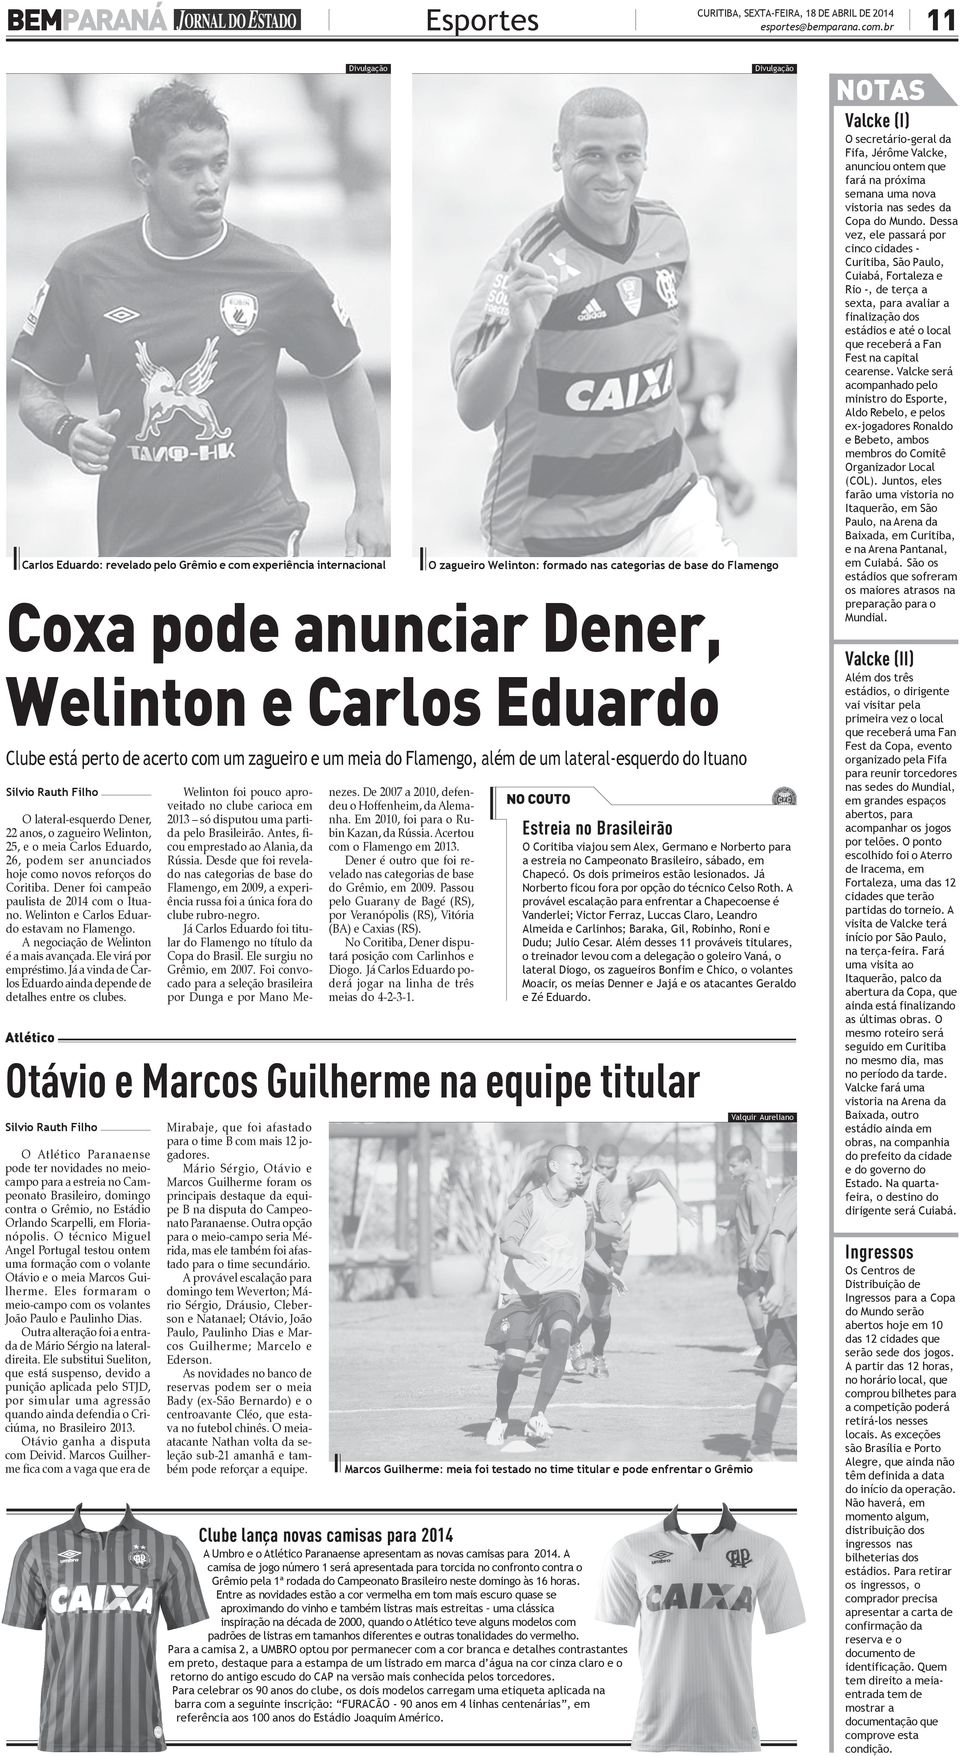 Dener, 22 anos, o zagueiro Welinton, 25, e o meia Carlos Eduardo, 26, podem ser anunciados hoje como novos reforços do Coritiba. Dener foi campeão paulista de 2014 com o Ituano.